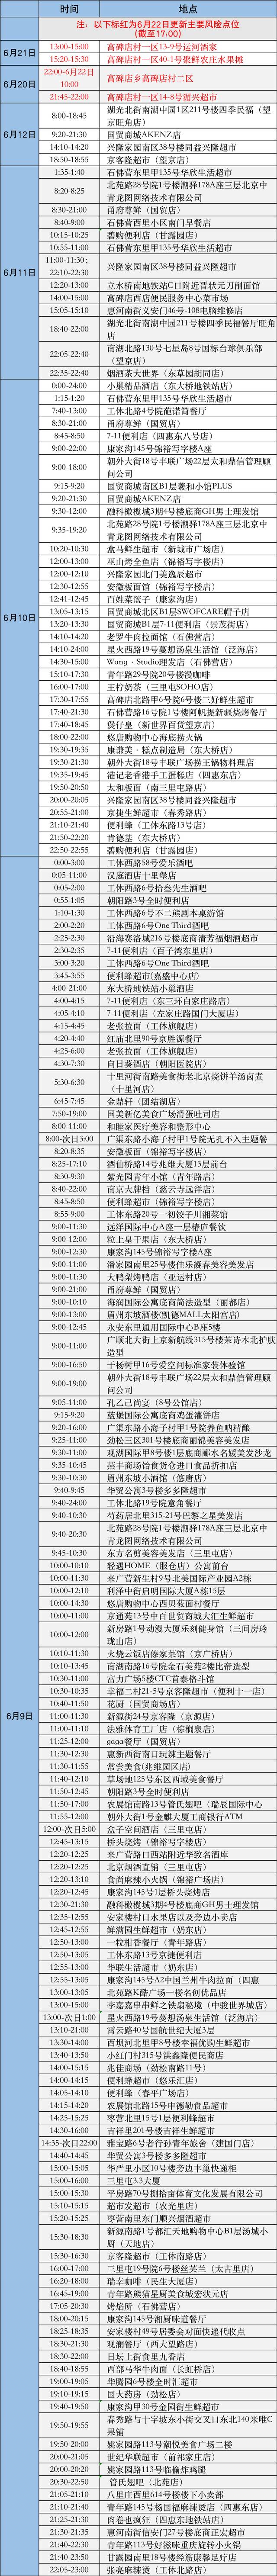 6月22日更新!北京朝阳区风险点位一图汇总,有交集速报告